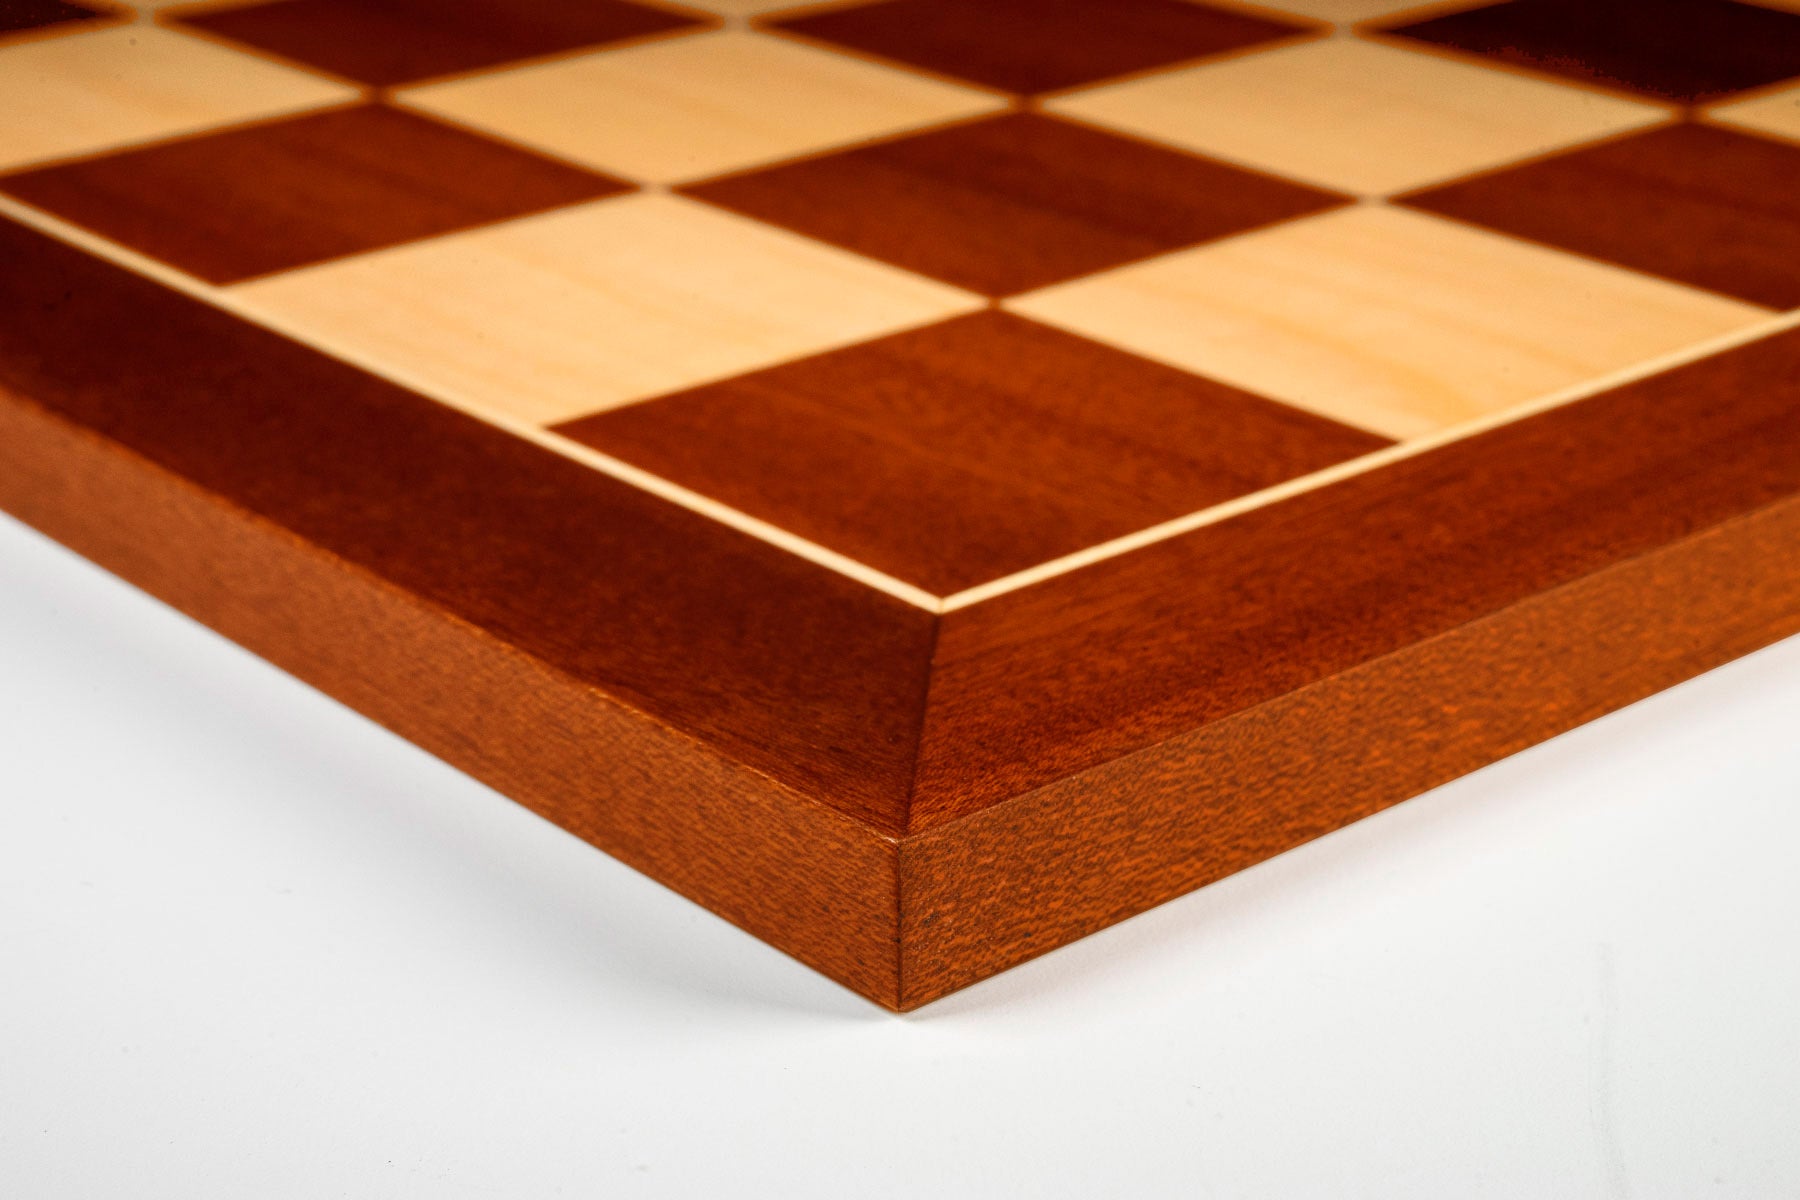 Mahogany Chess Board